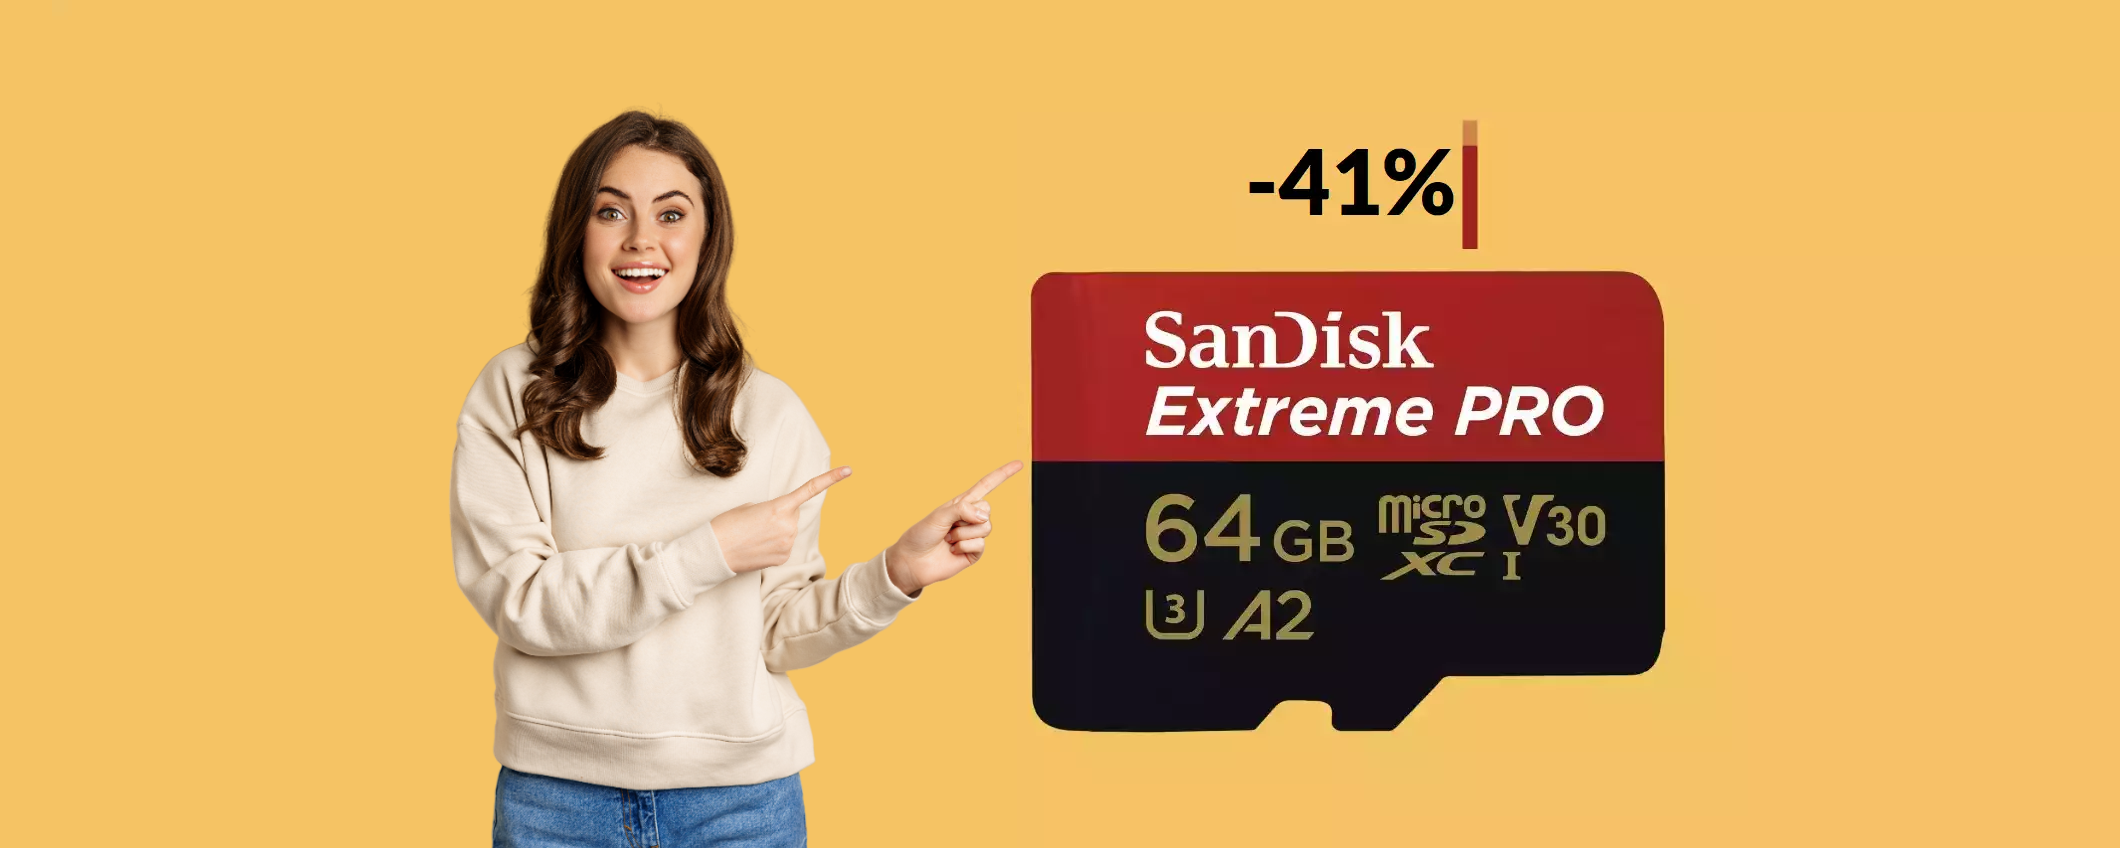 MicroSD 64GB: una boccata d'aria per il tuo smartphone a soli 19€